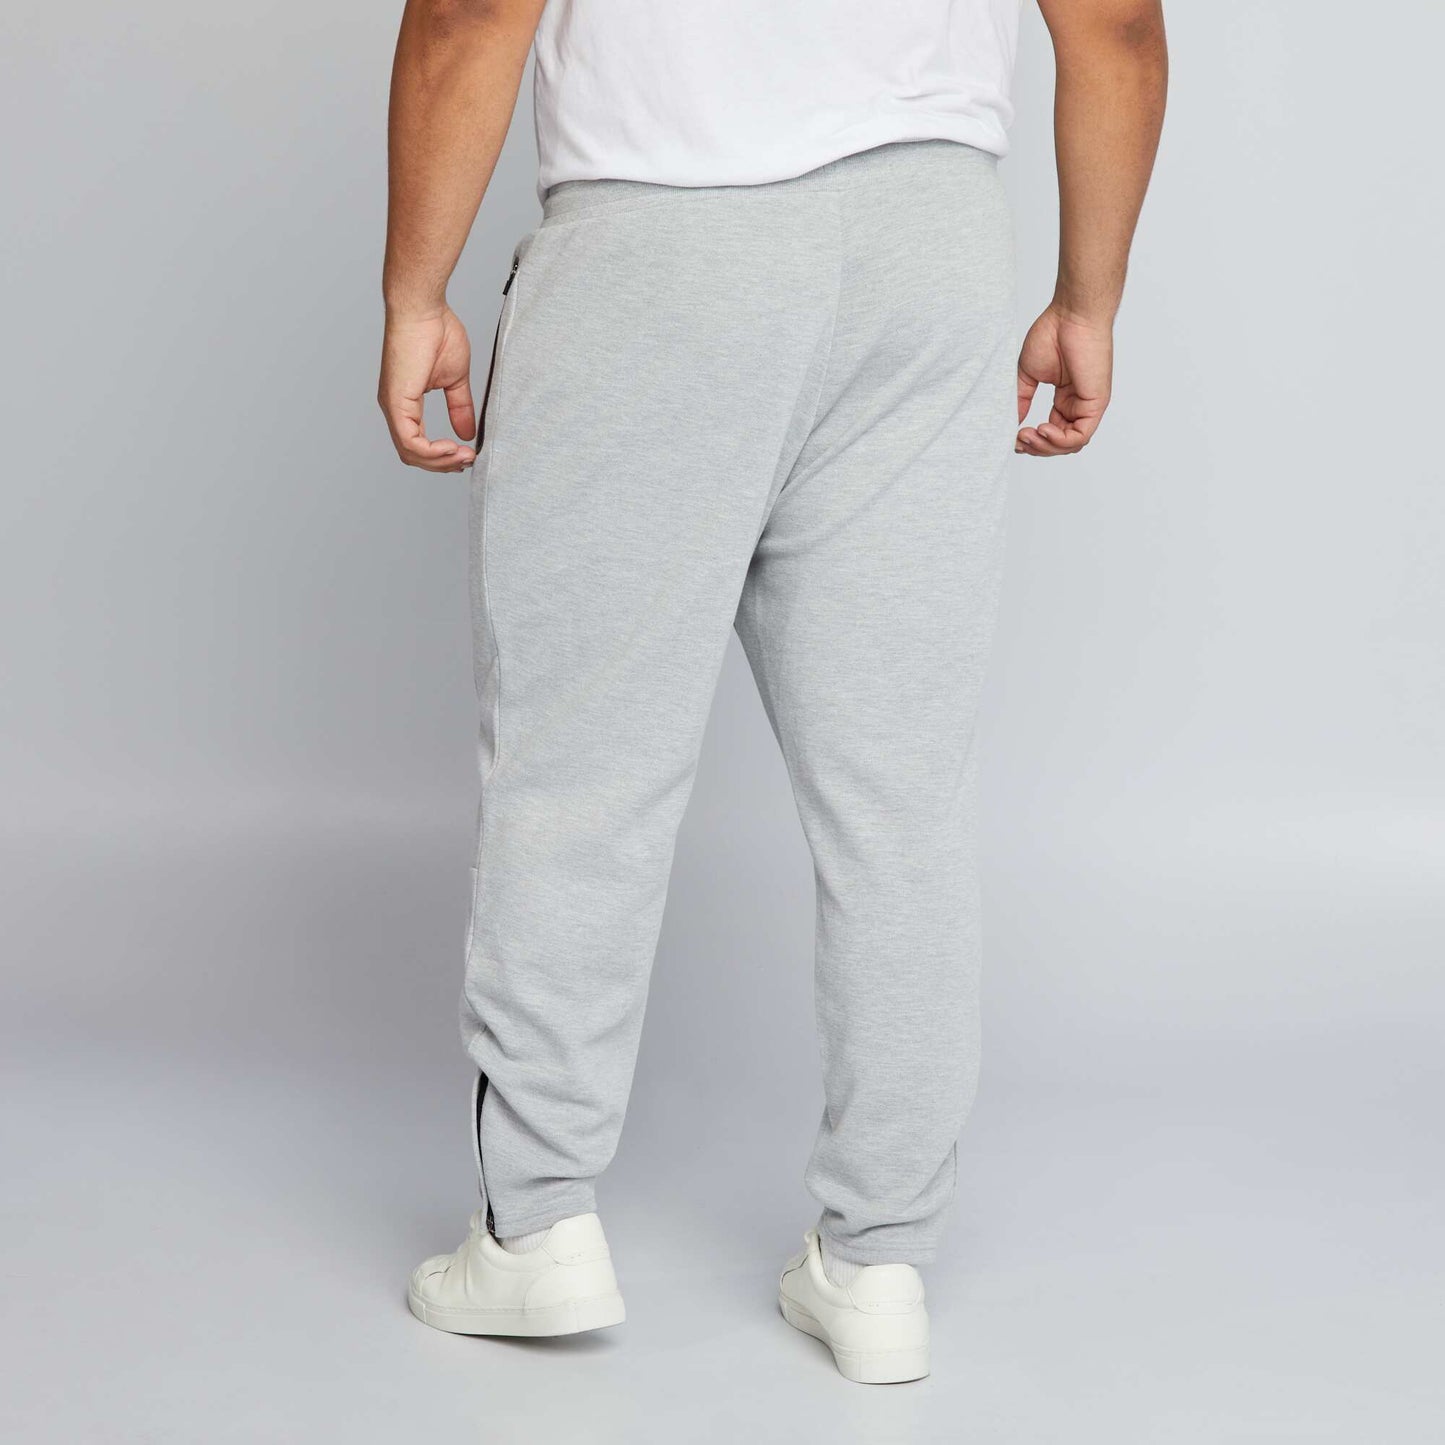 Pantalon jogging maille piquée gris